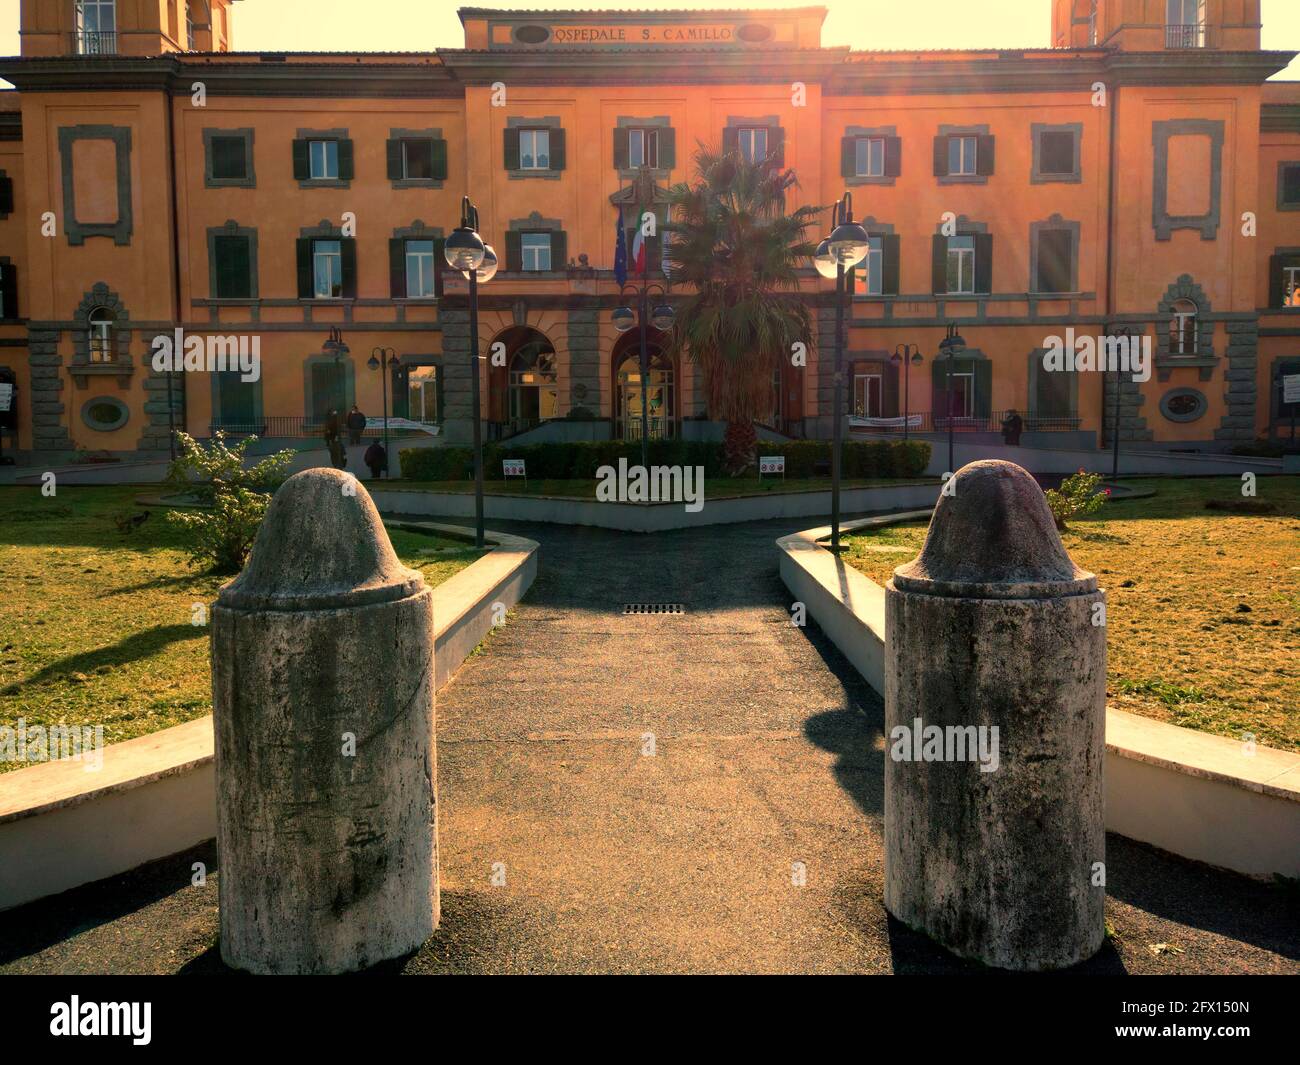 Roma, Italia - 11 novembre 2020: Cortile d'ingresso e facciata del famoso  Ospedale San Camillo di Roma con accesso al Padiglione Piastra Foto stock -  Alamy